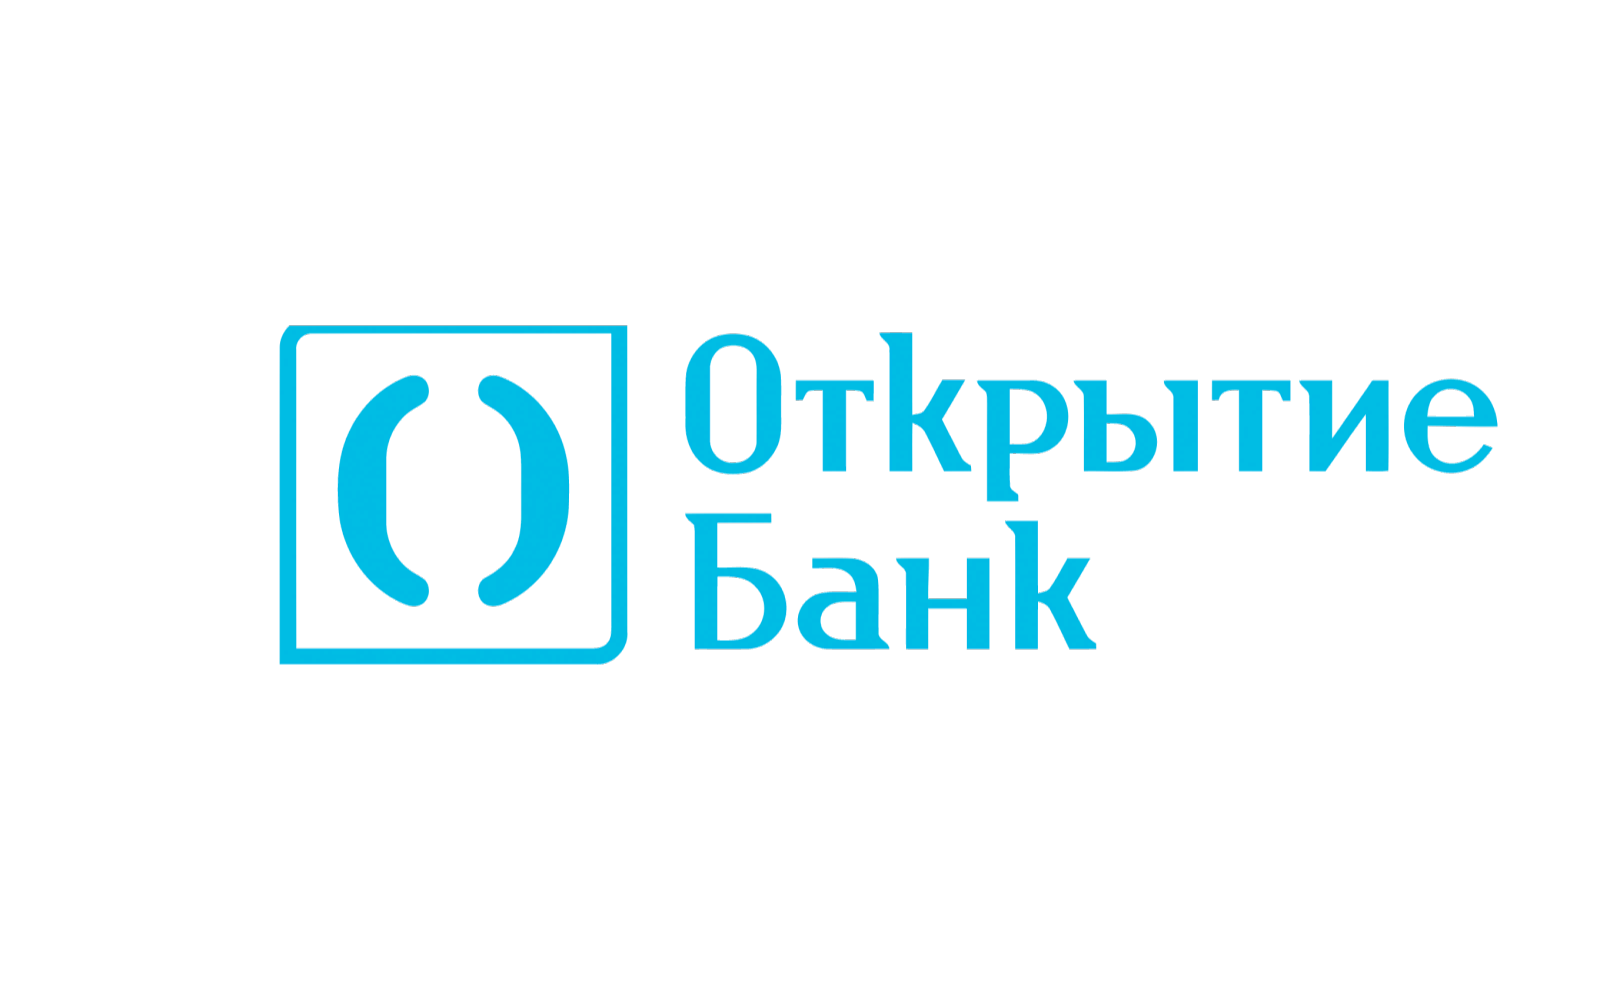 Открытие Банк - Ипотека-госпрограмма 2020